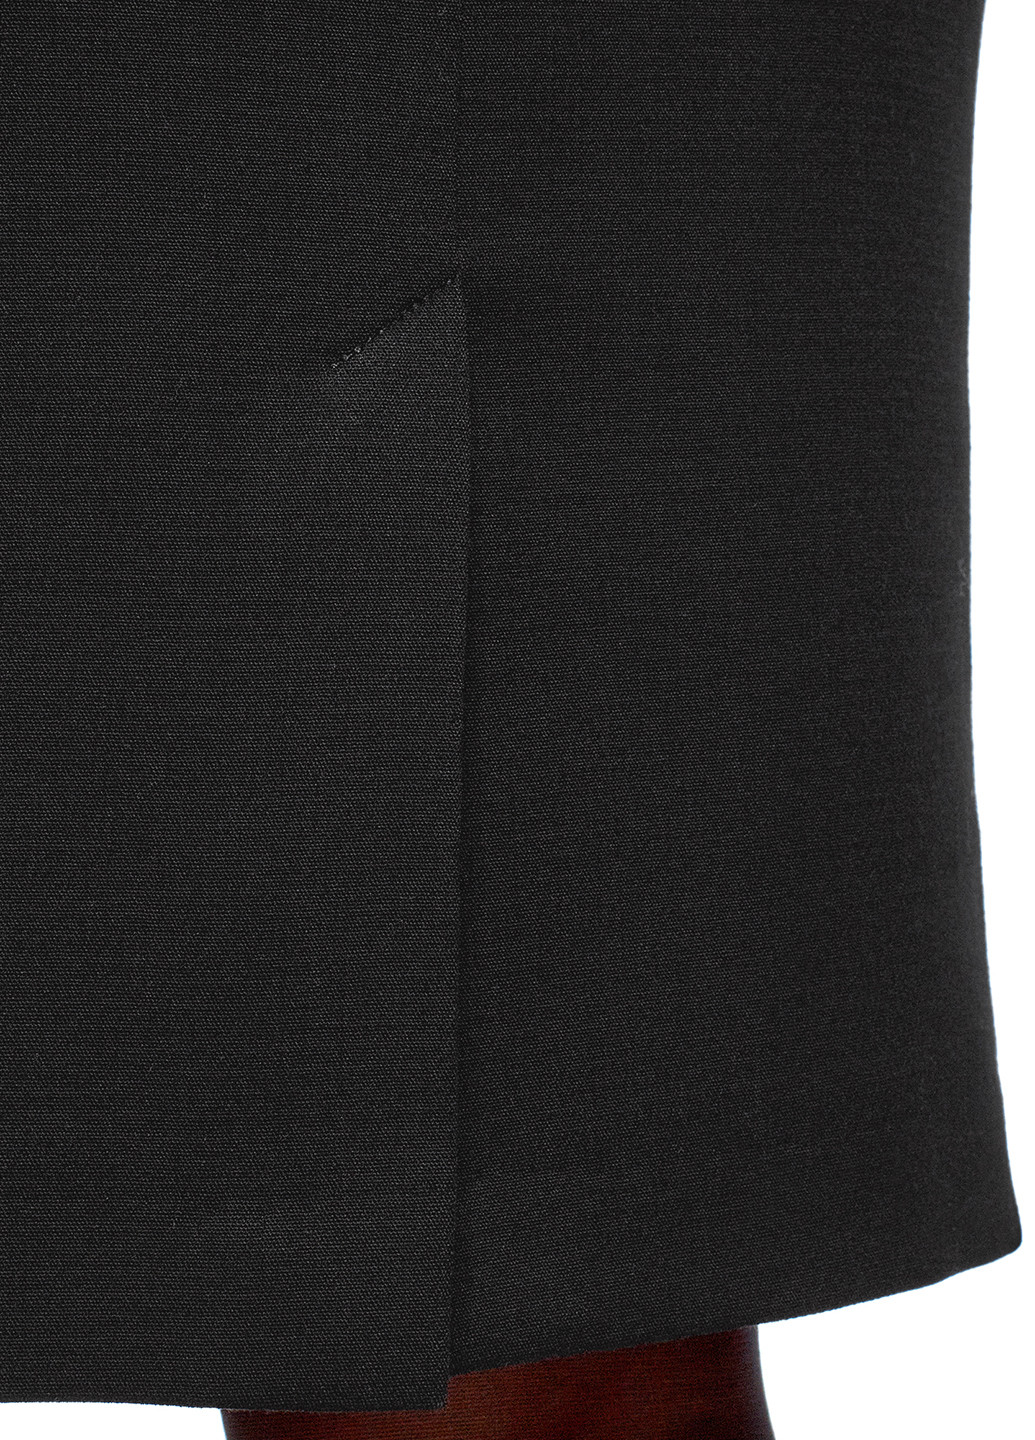 Черная офисная однотонная юбка Oodji мини